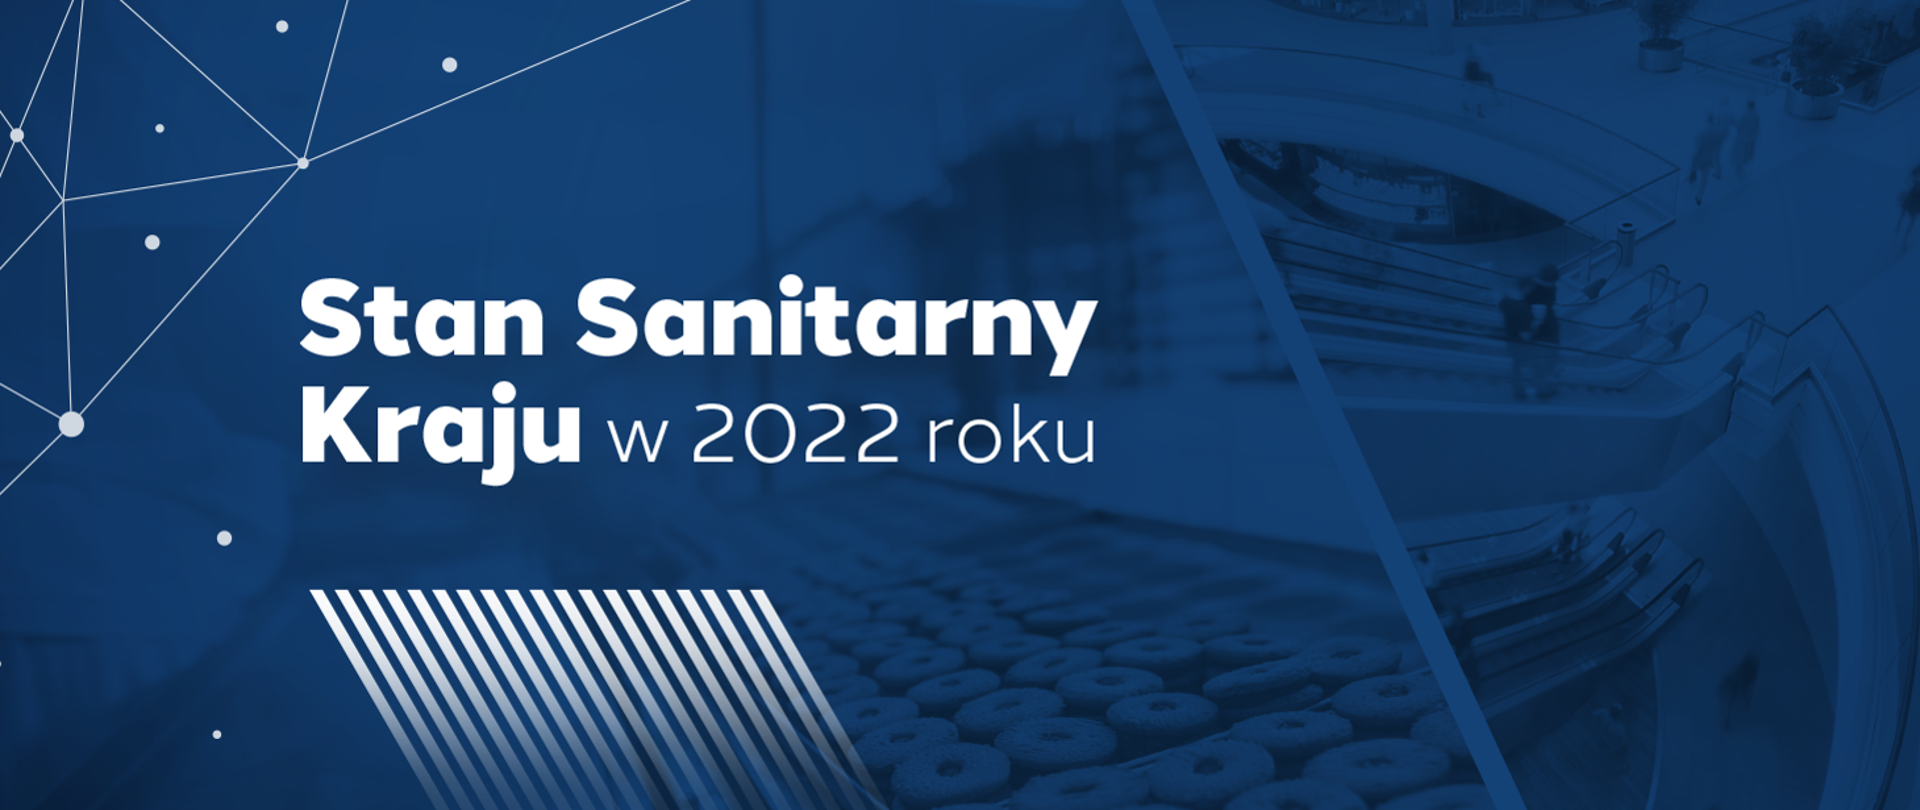 Stan Sanitarny Kraju w 2022